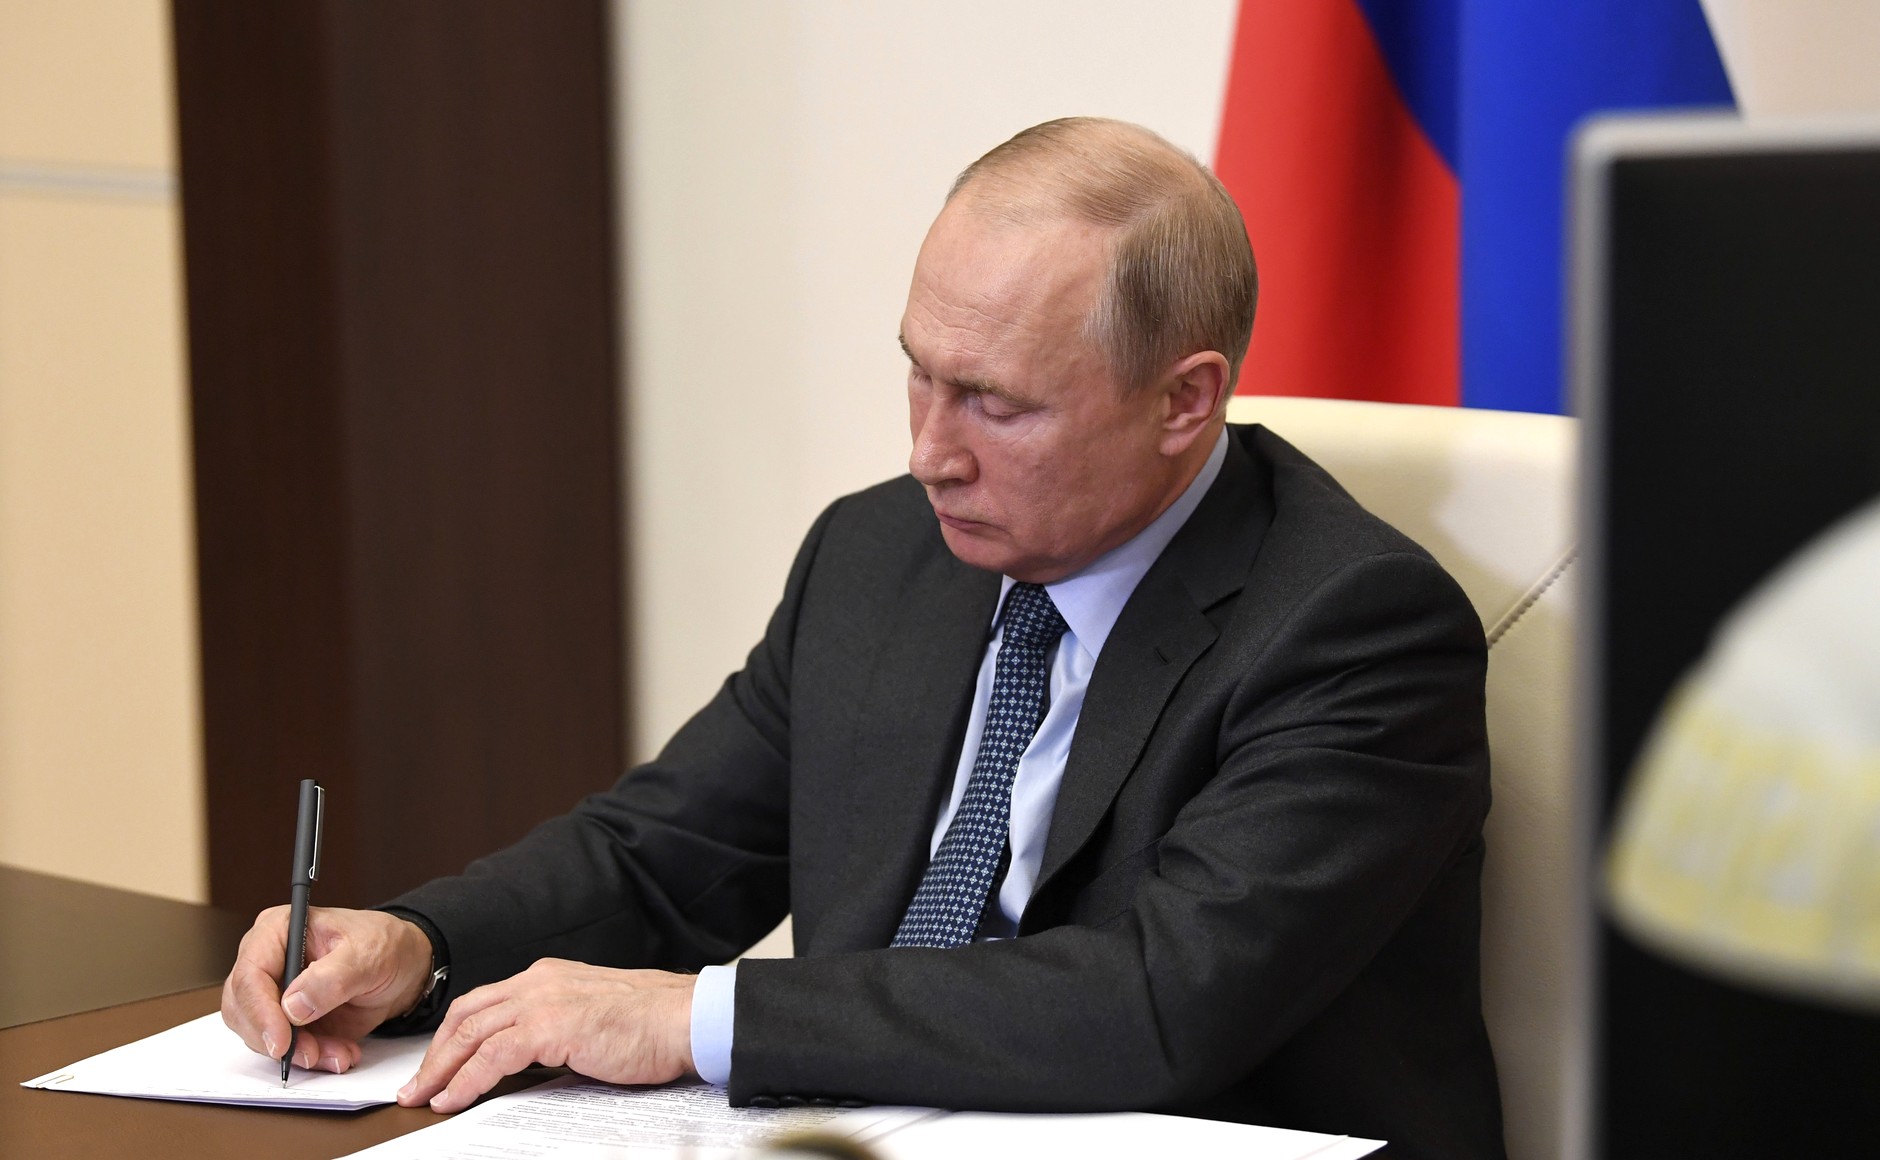 Путин поддержал участие Минниханова в выборах главы Татарстана (видео)